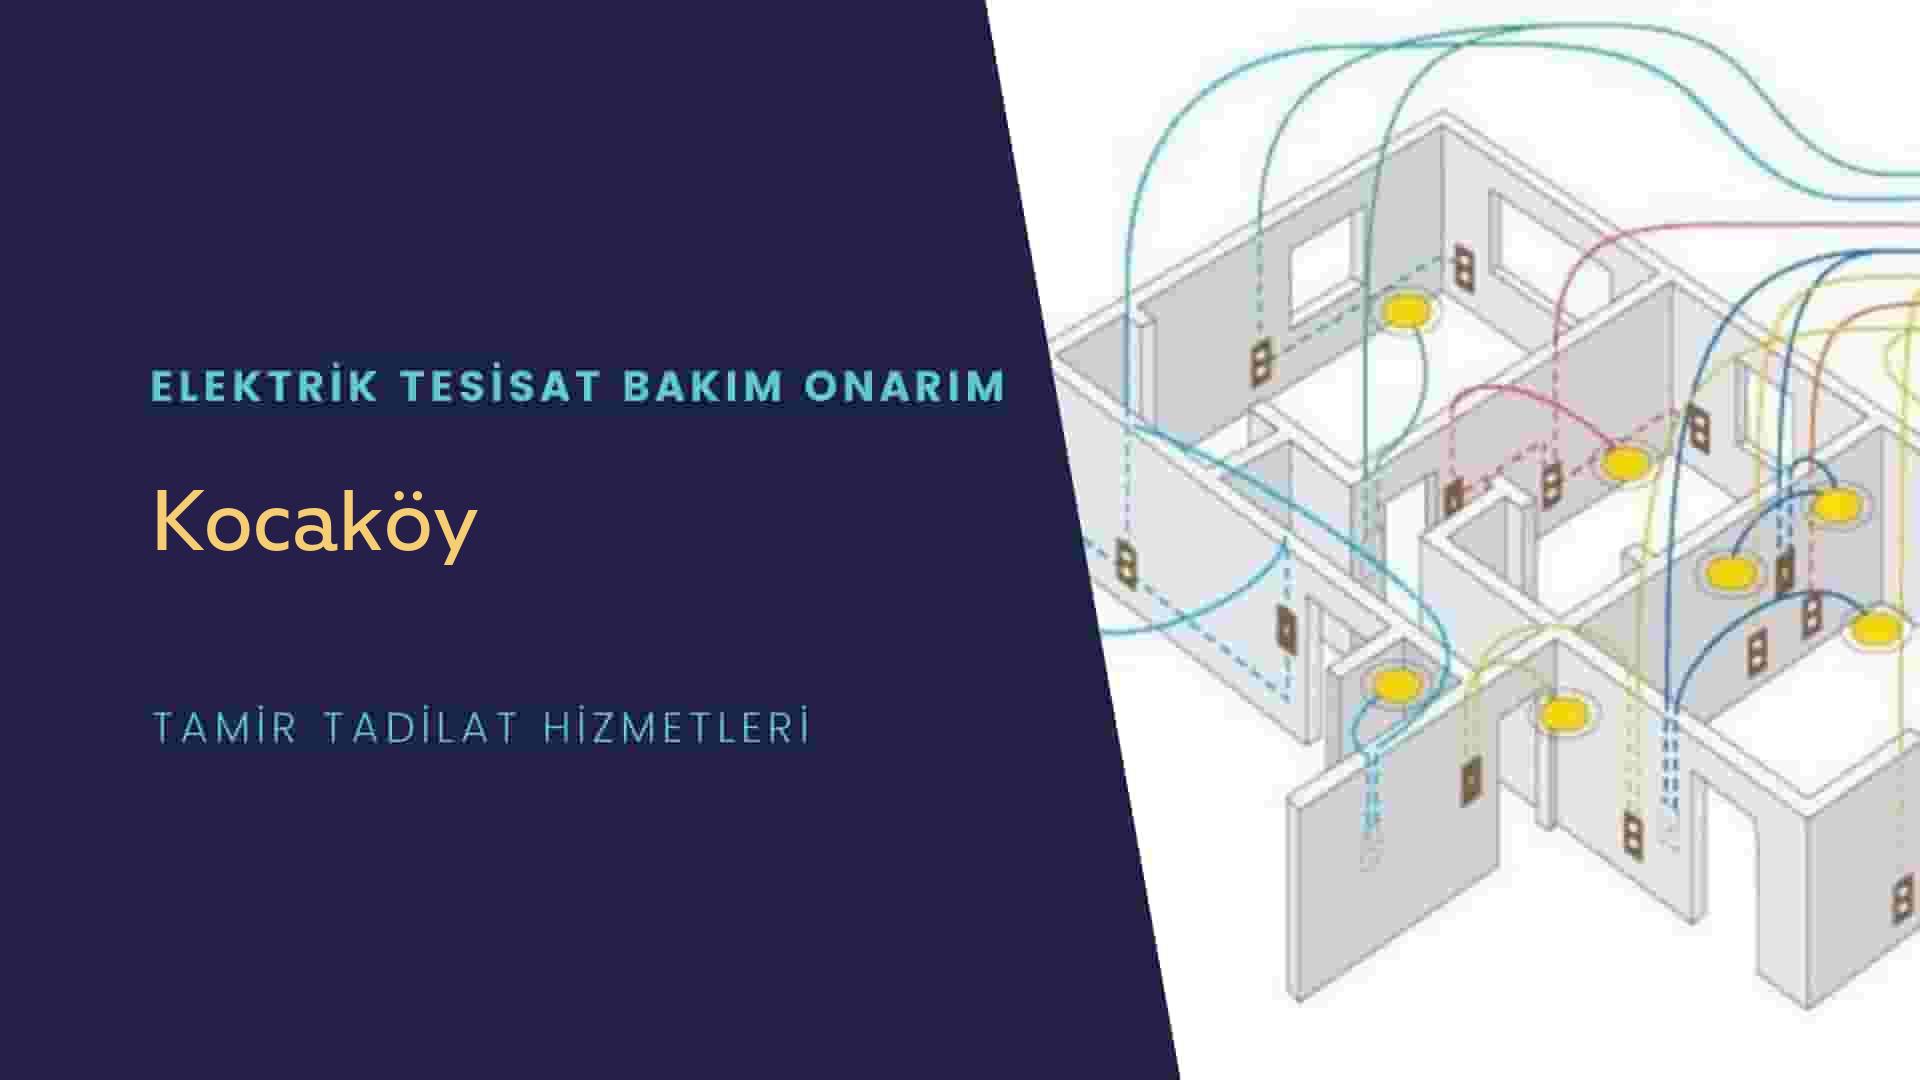 Kocaköy'de elektrik tesisatı ustalarımı arıyorsunuz doğru adrestenizi Kocaköy elektrik tesisatı ustalarımız 7/24 sizlere hizmet vermekten mutluluk duyar.